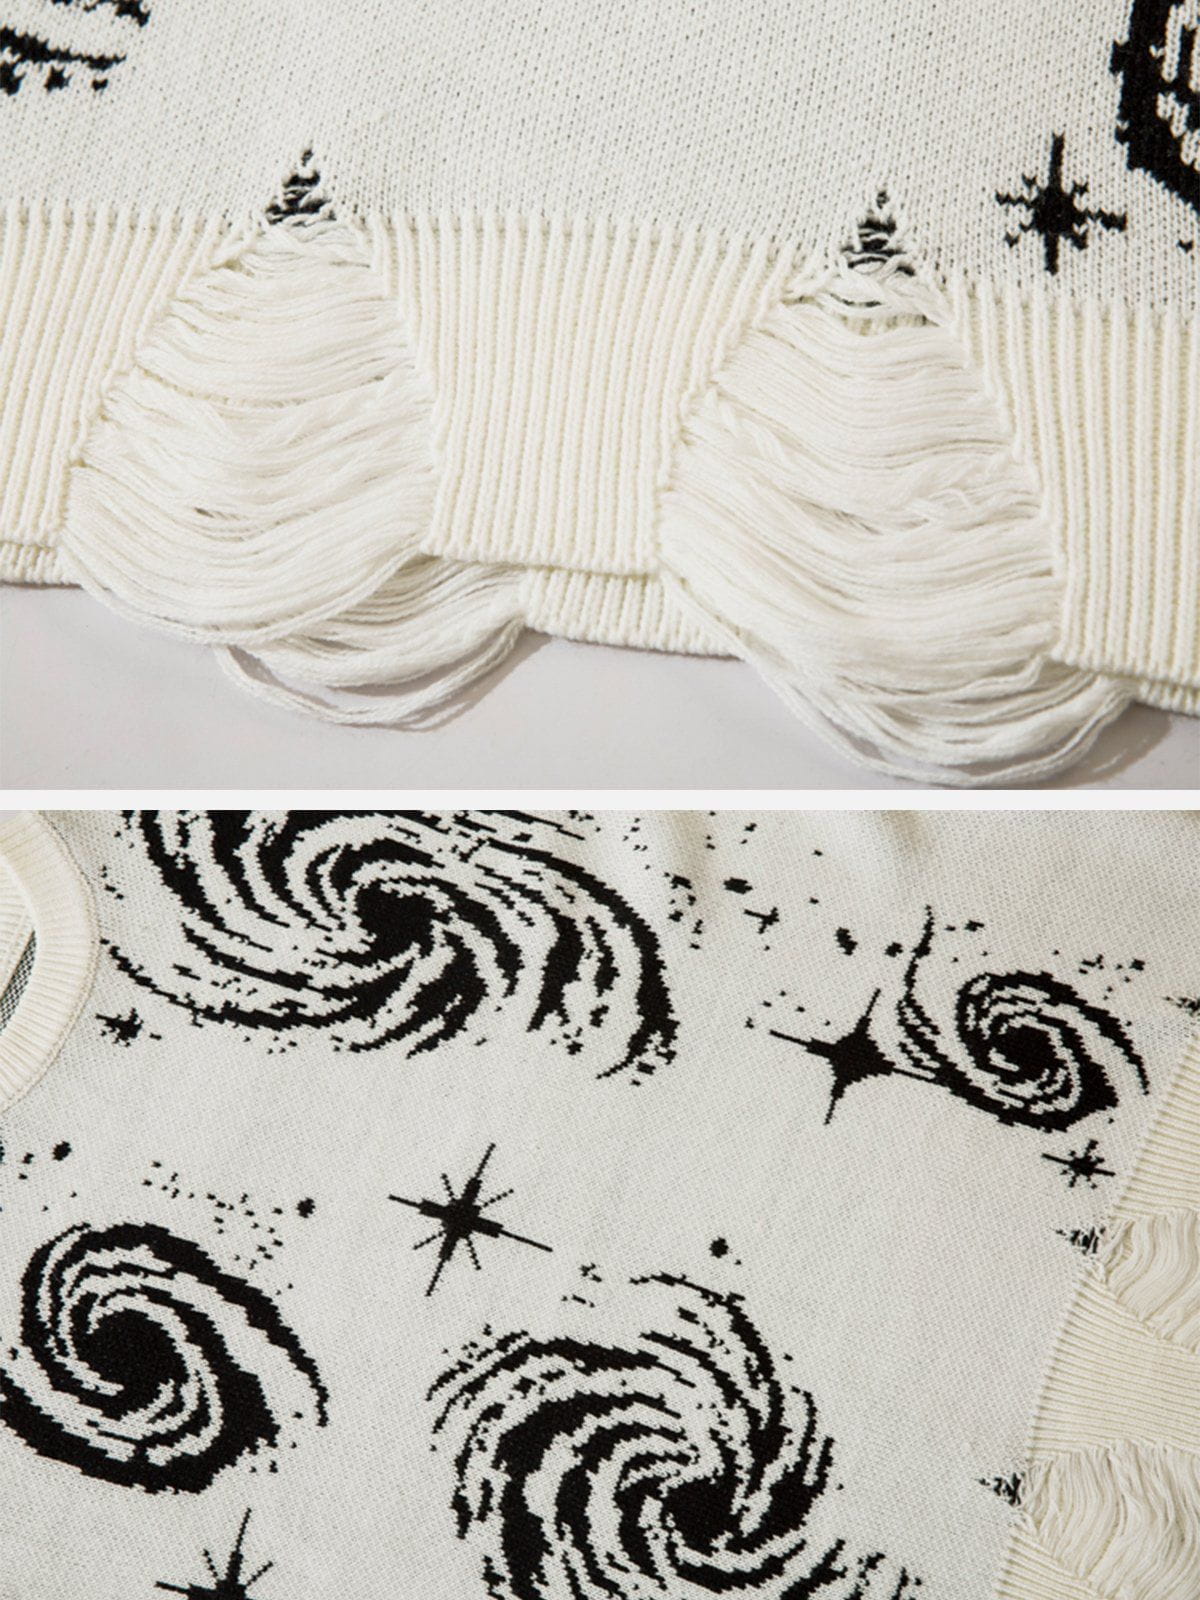 Eprezzy® - Starry Night Jacquard Knit Sweater Streetwear Fashion - eprezzy.com